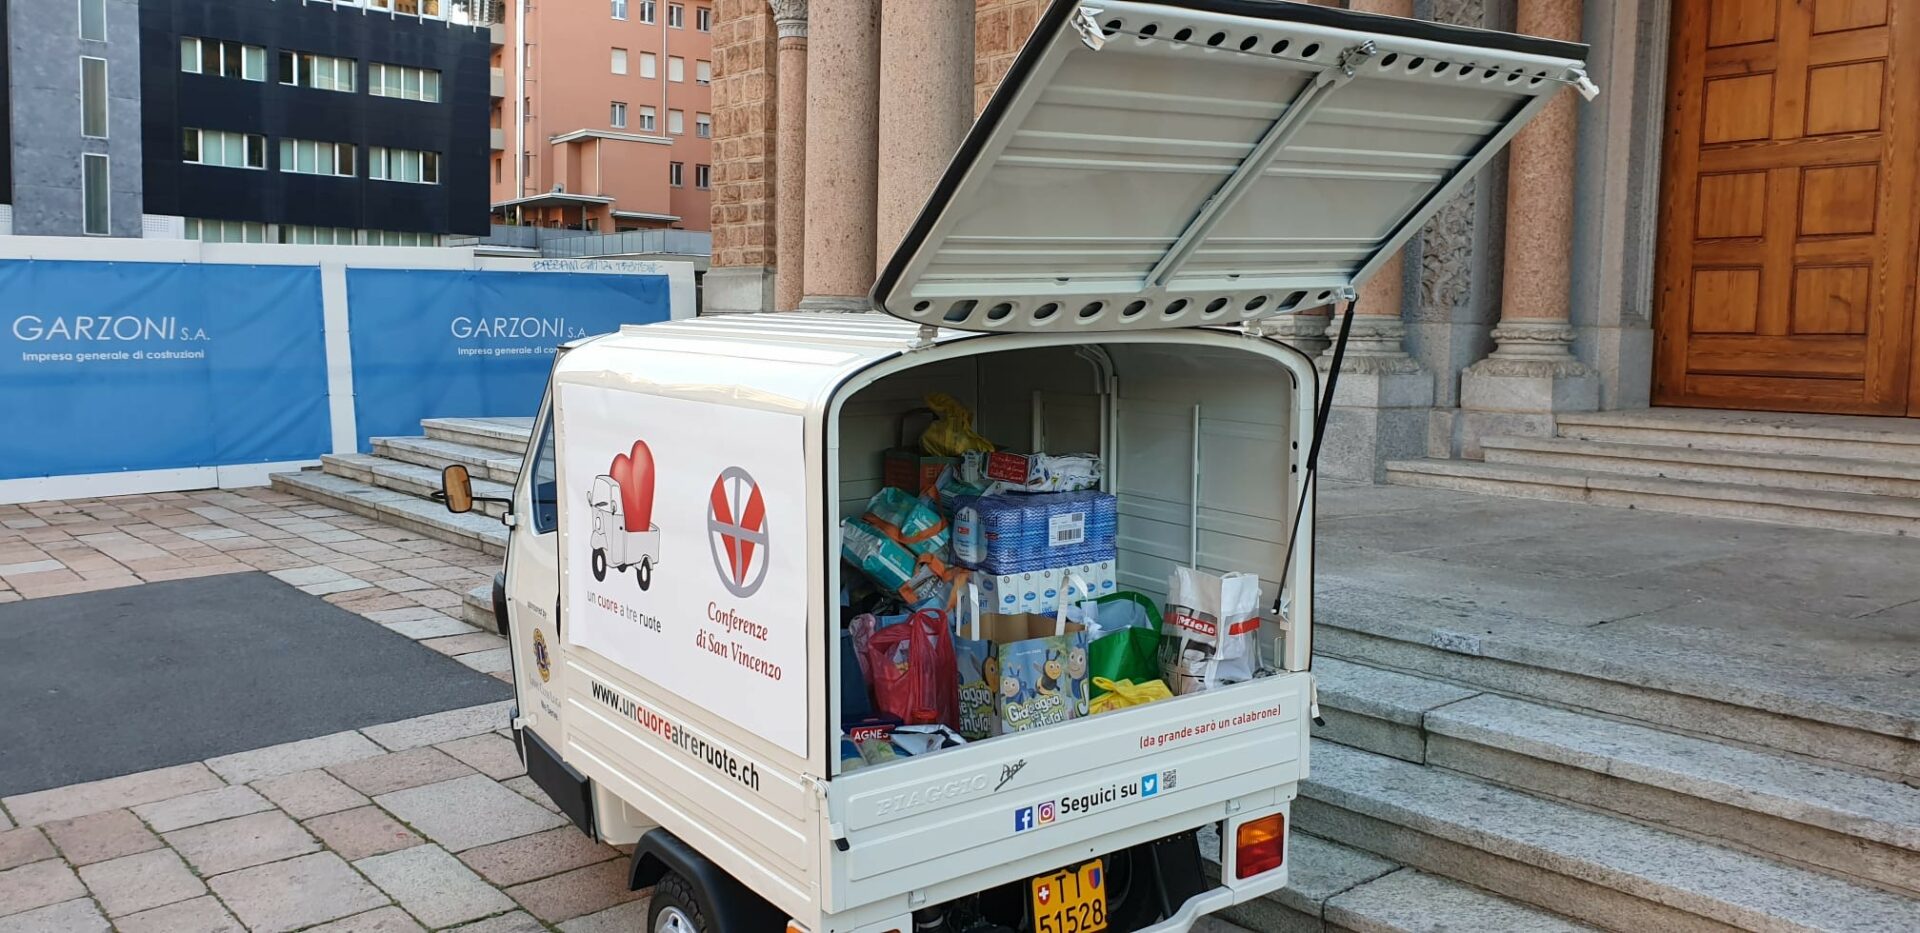 'L'APE del cuore' est l'une des initiatives solidaires proposées par les paroisses tessinoises pour aider les personnes dans le besoin, notamment à cause de l'urgence-coronavirus | © catt.ch